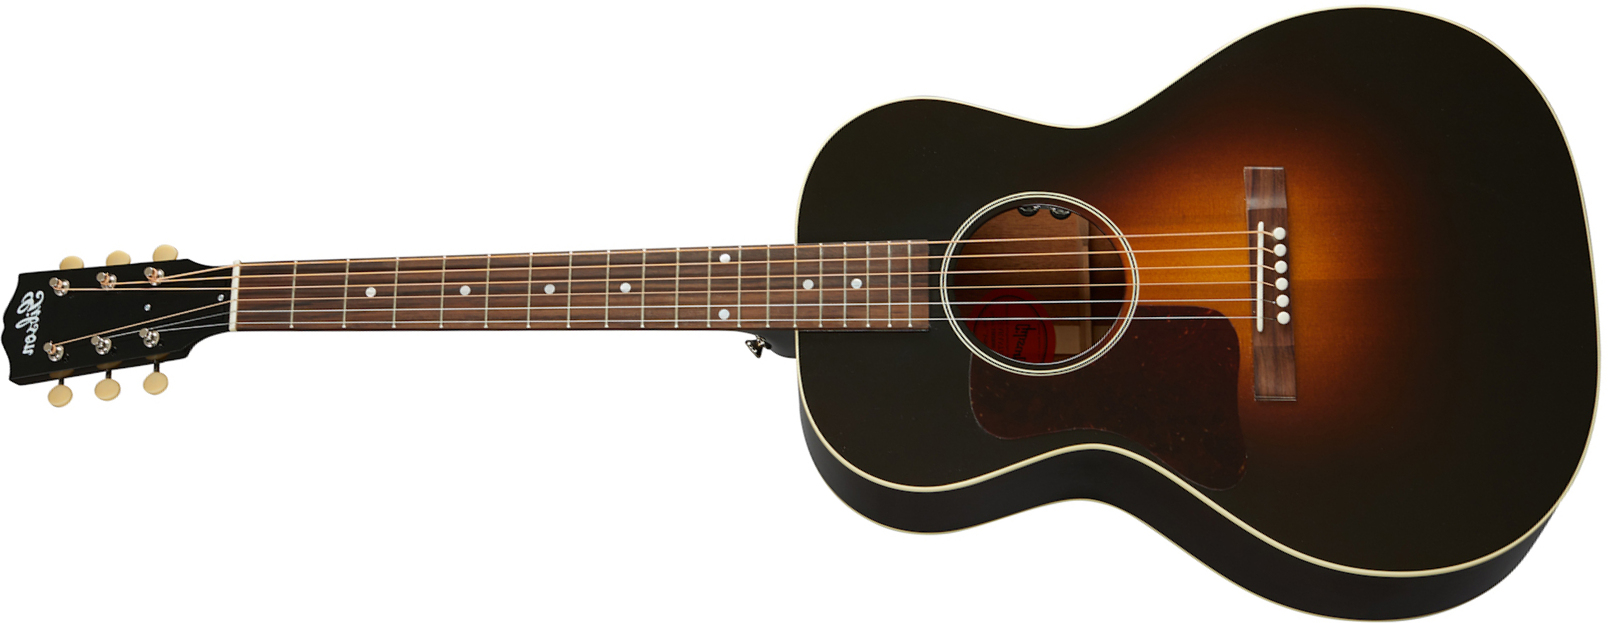 Gibson L-00 Original Lh 2020 Parlor Gaucher Epicea Acajou Rw - Vintage Sunburst - Electro acoustic guitar - Main picture